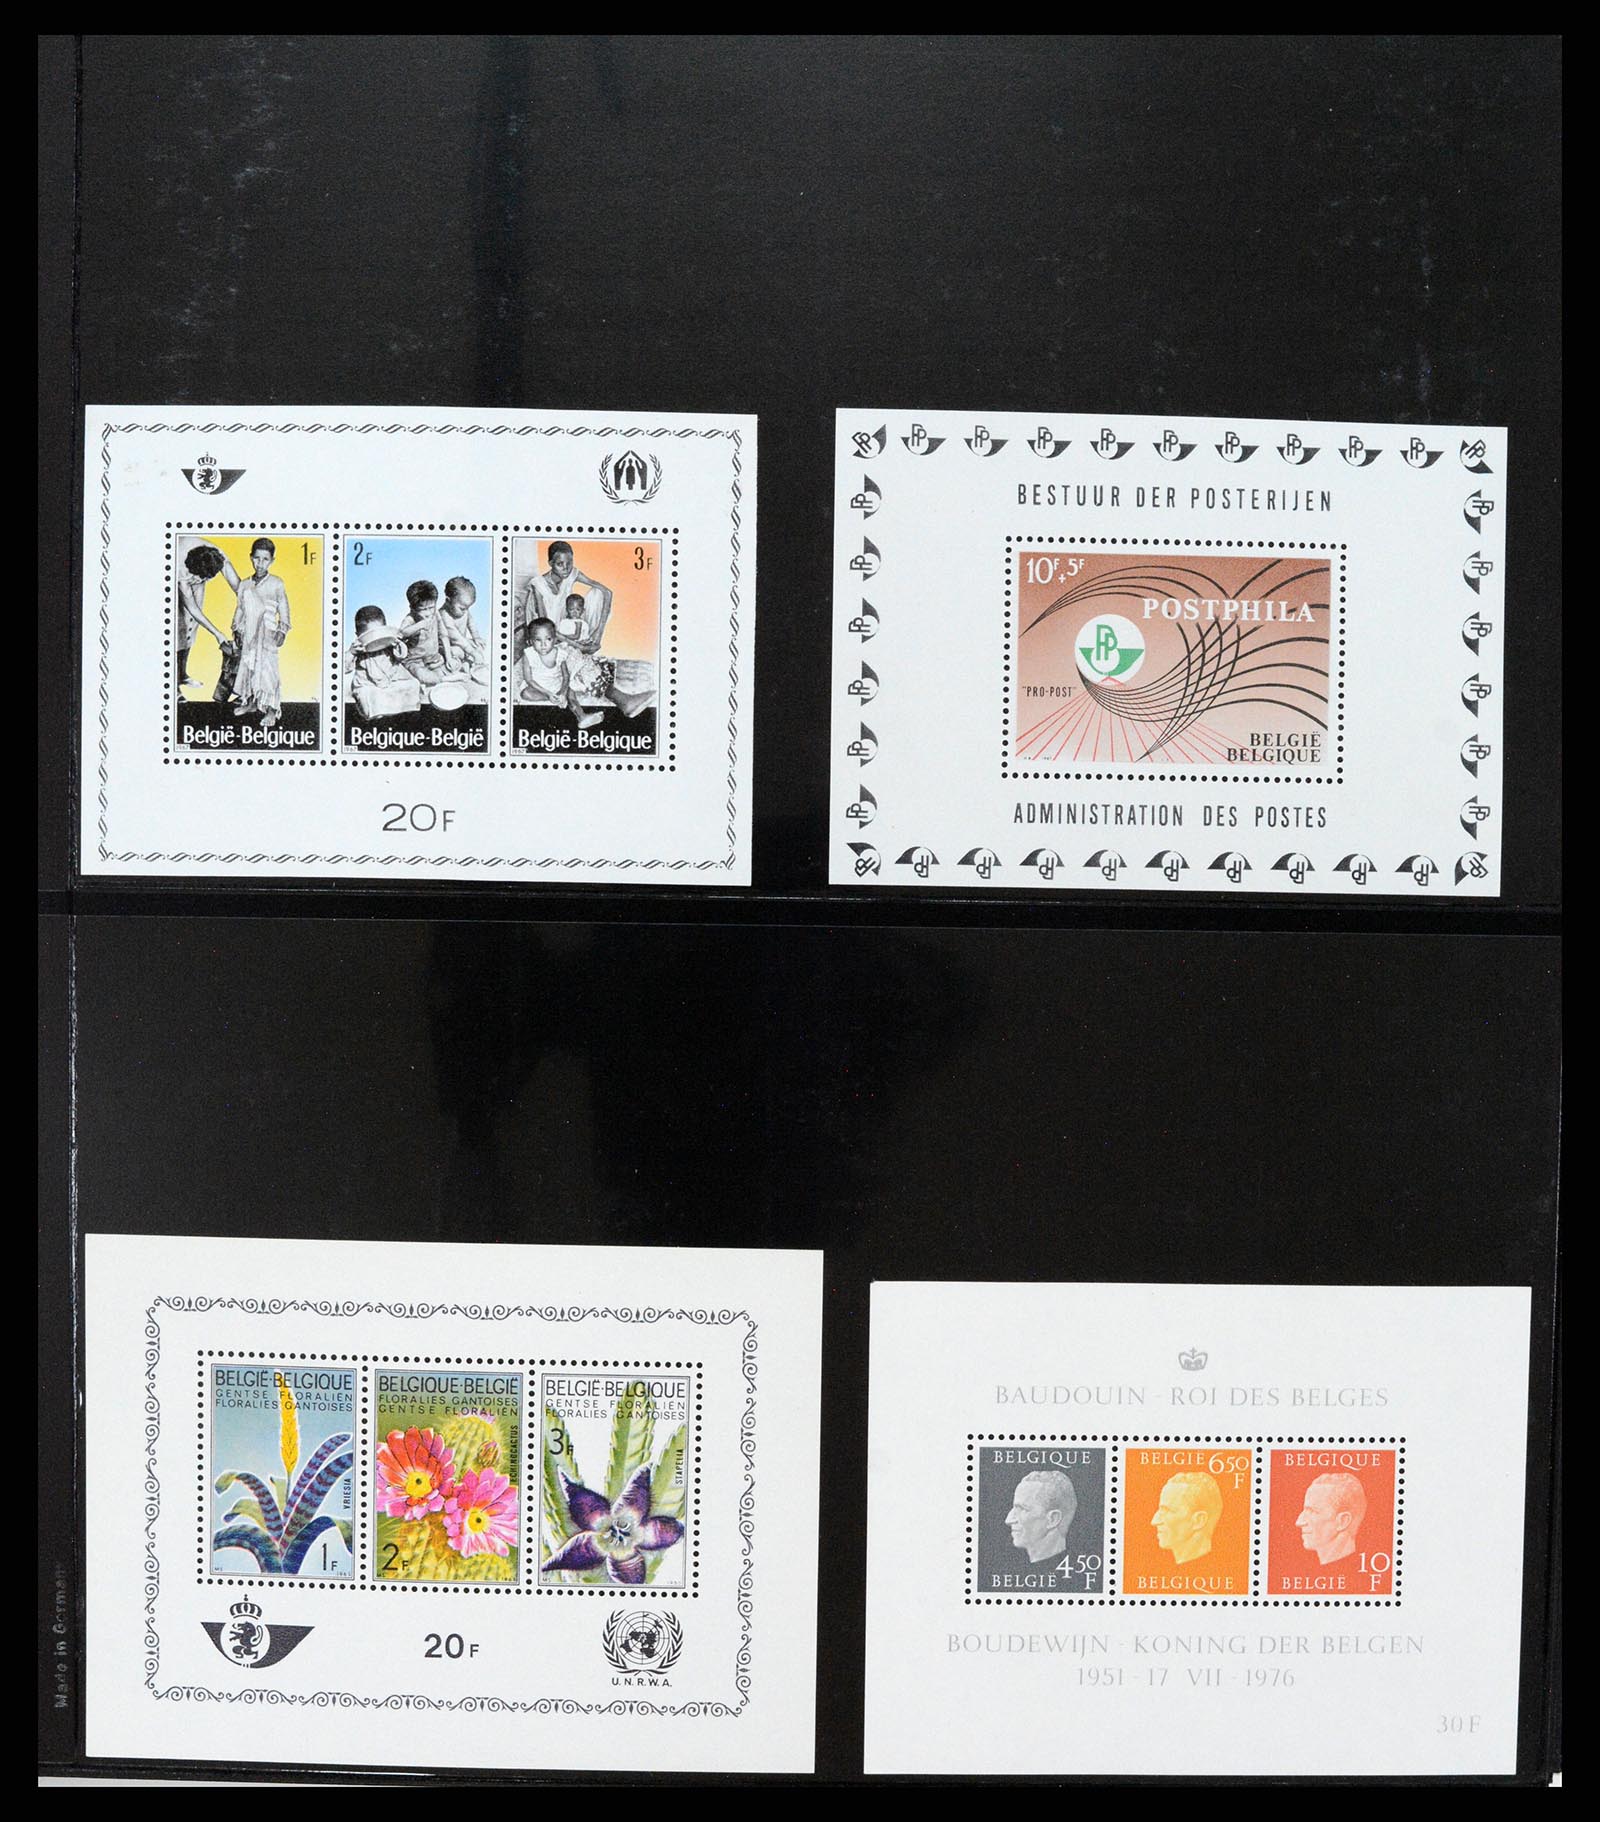 37345 006 - Stamp collection 37345 European countries souvenir sheets.